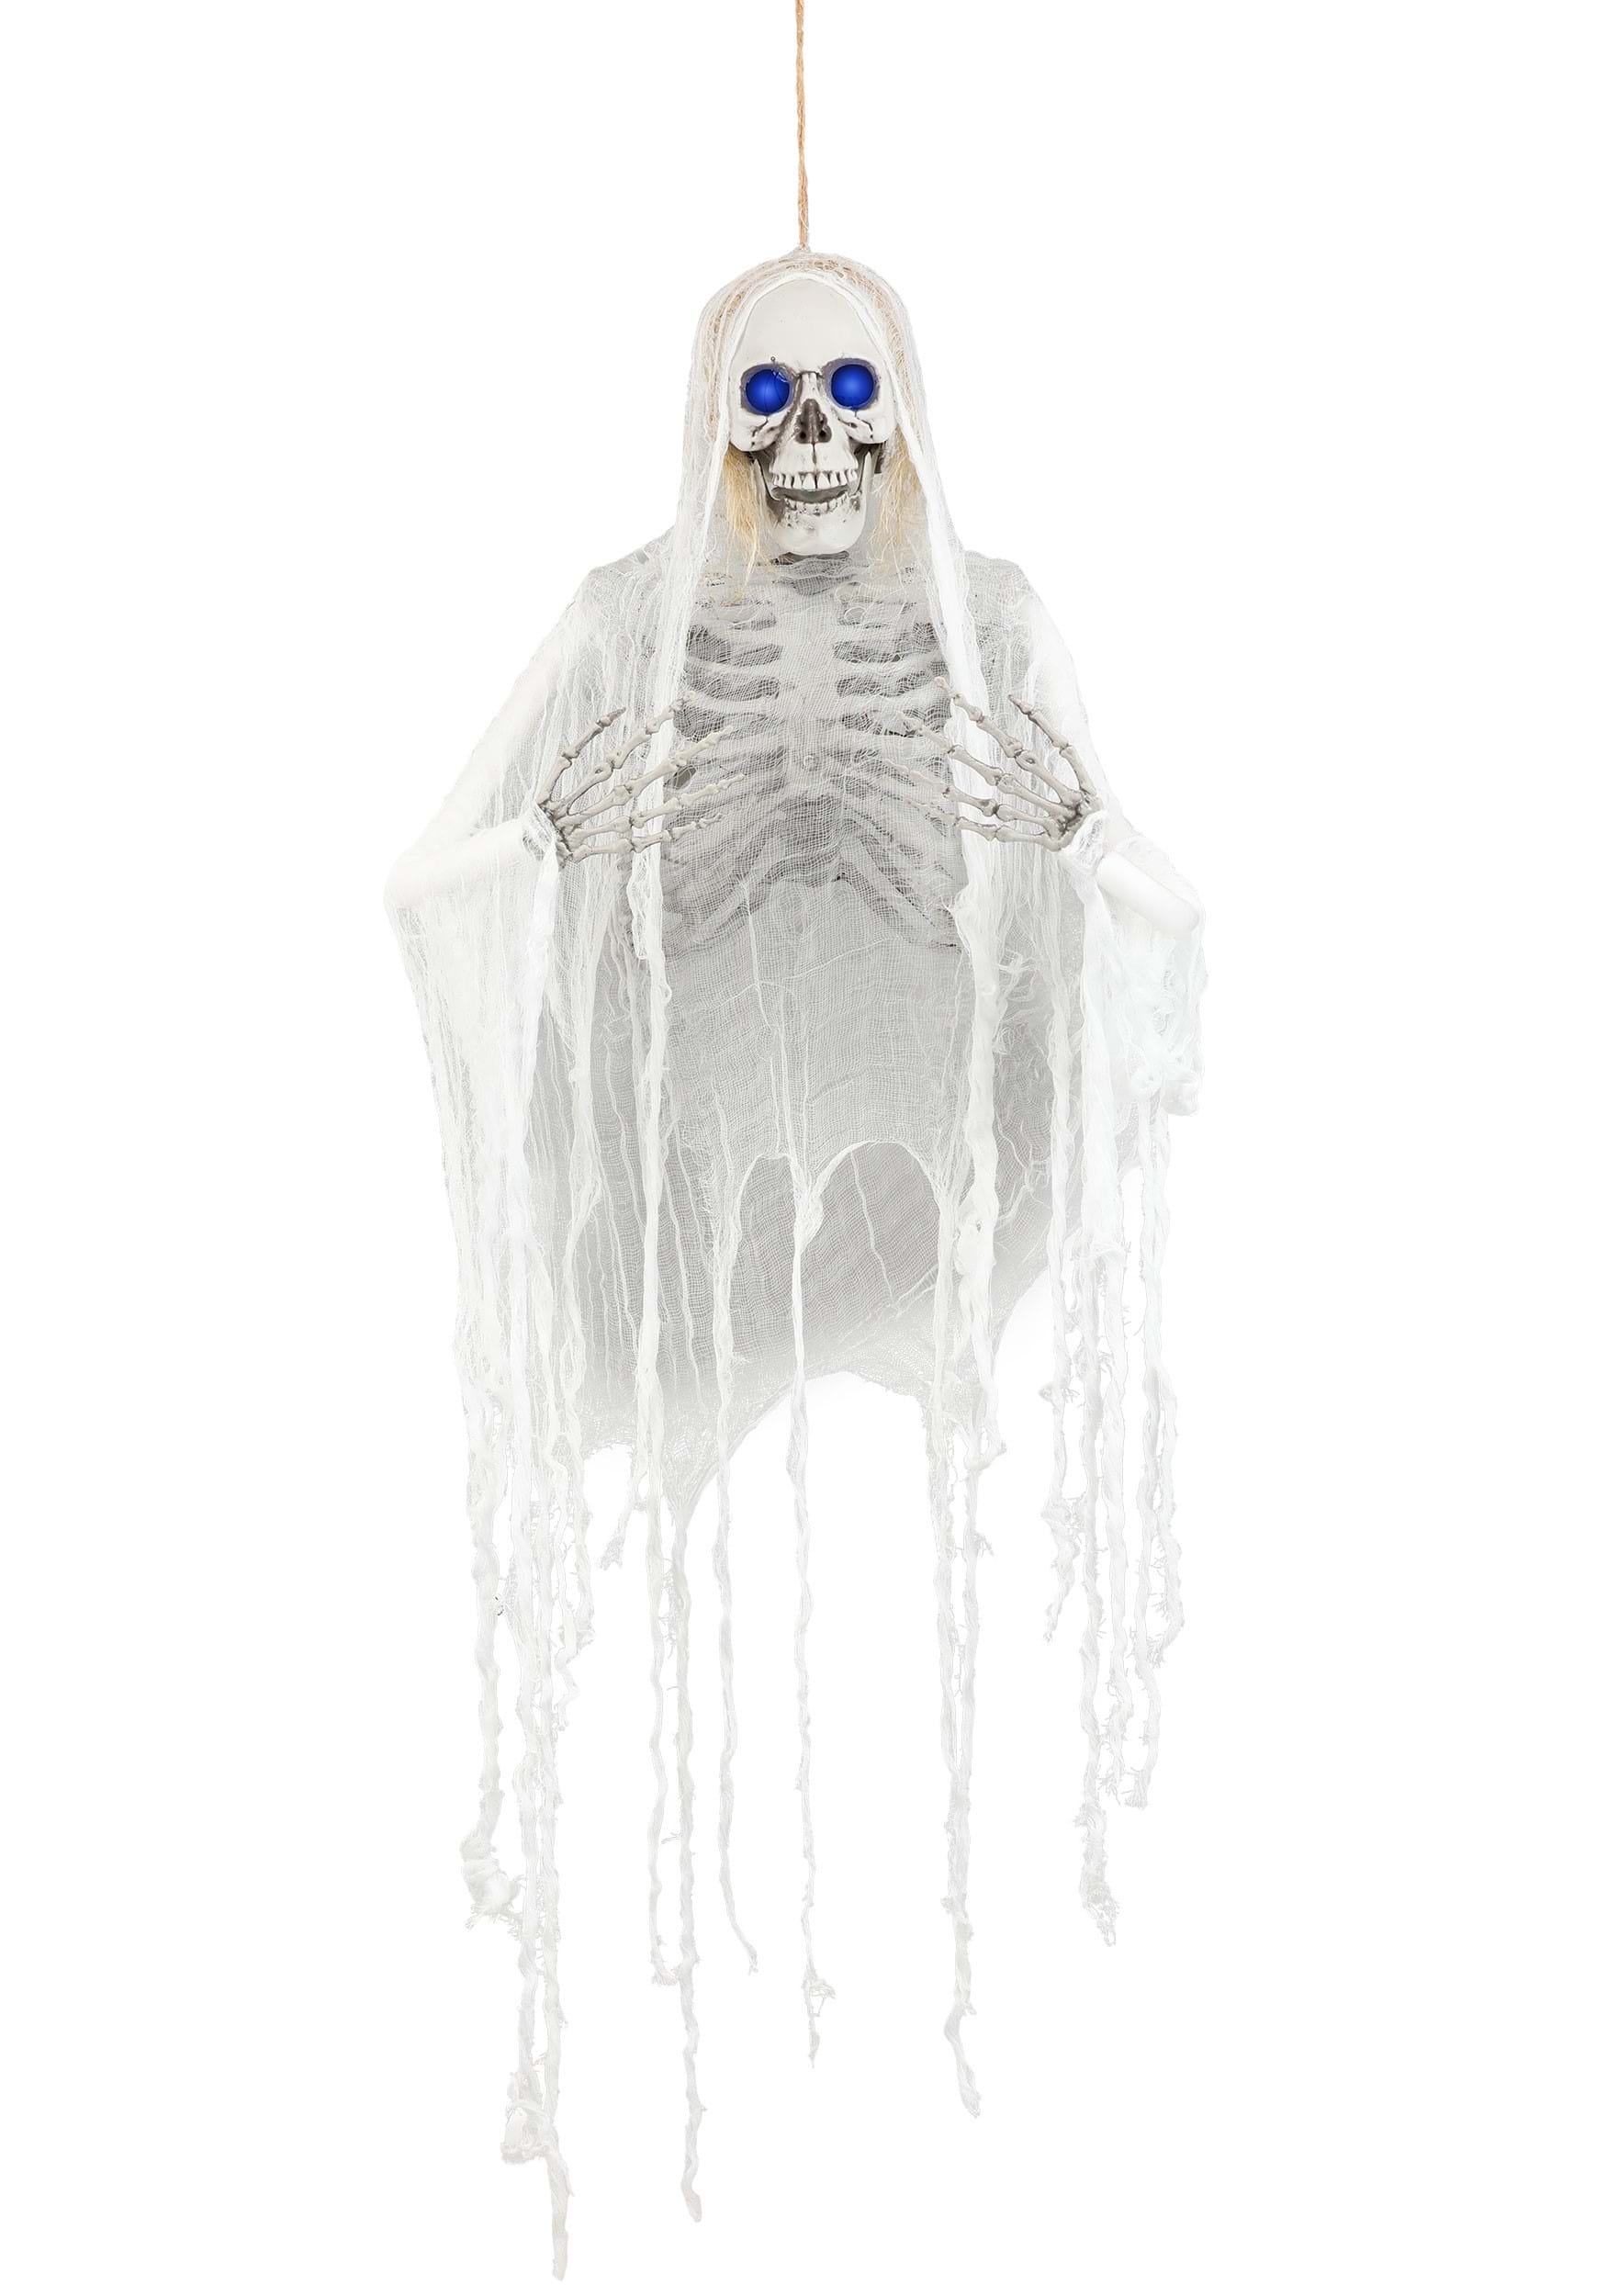 Hanging Light Up Skeleton With Blue Lights Halloween Decoration